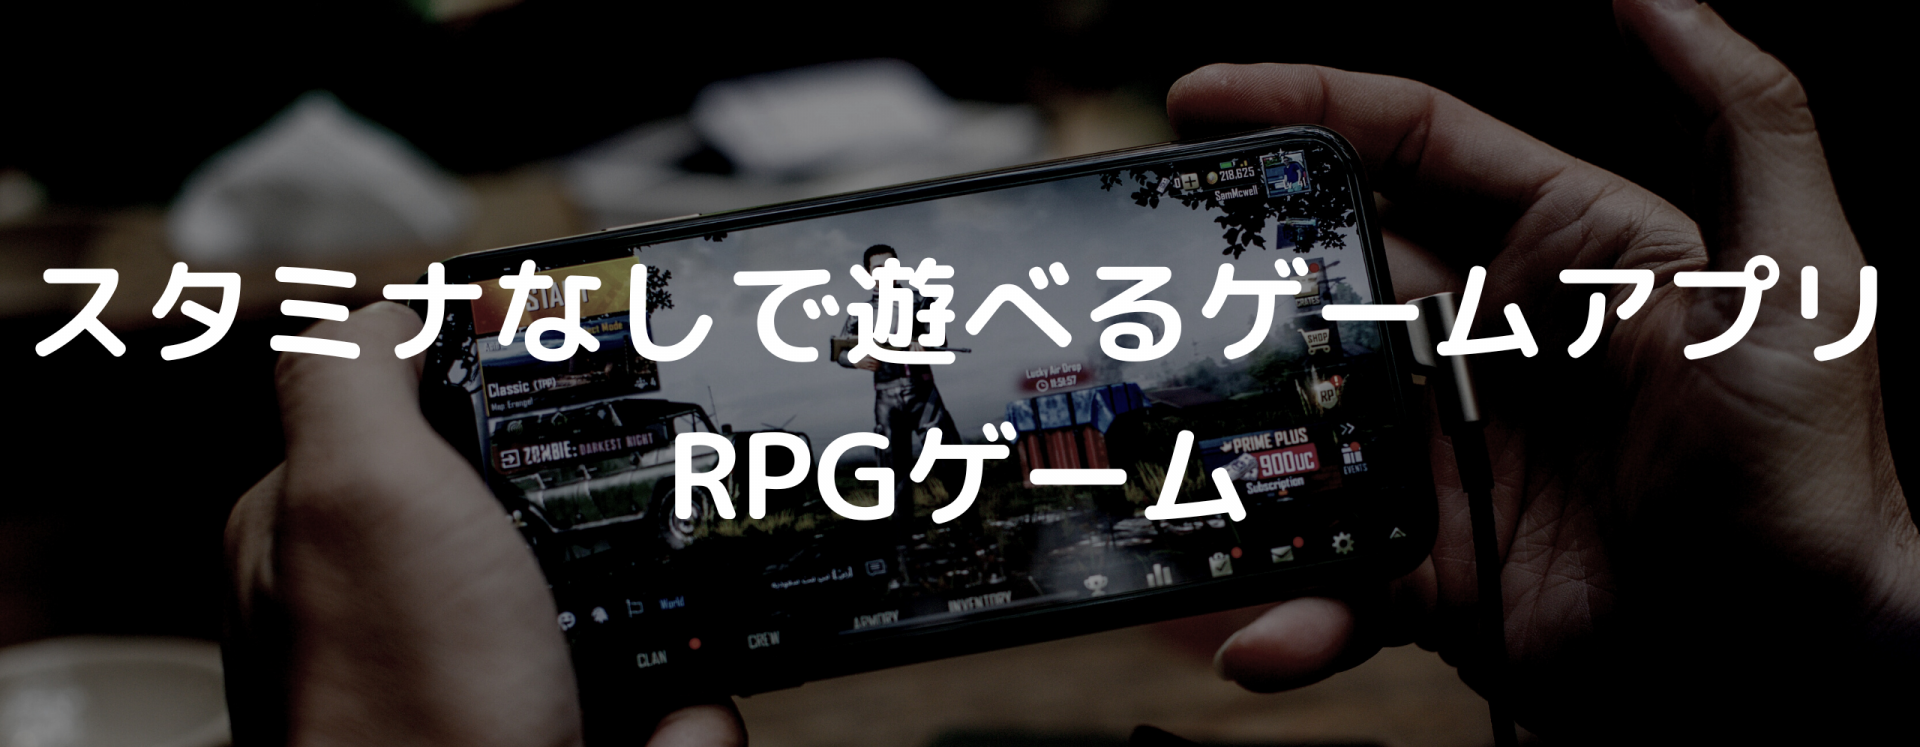 スタミナなし_ゲームアプリ_RPGゲーム